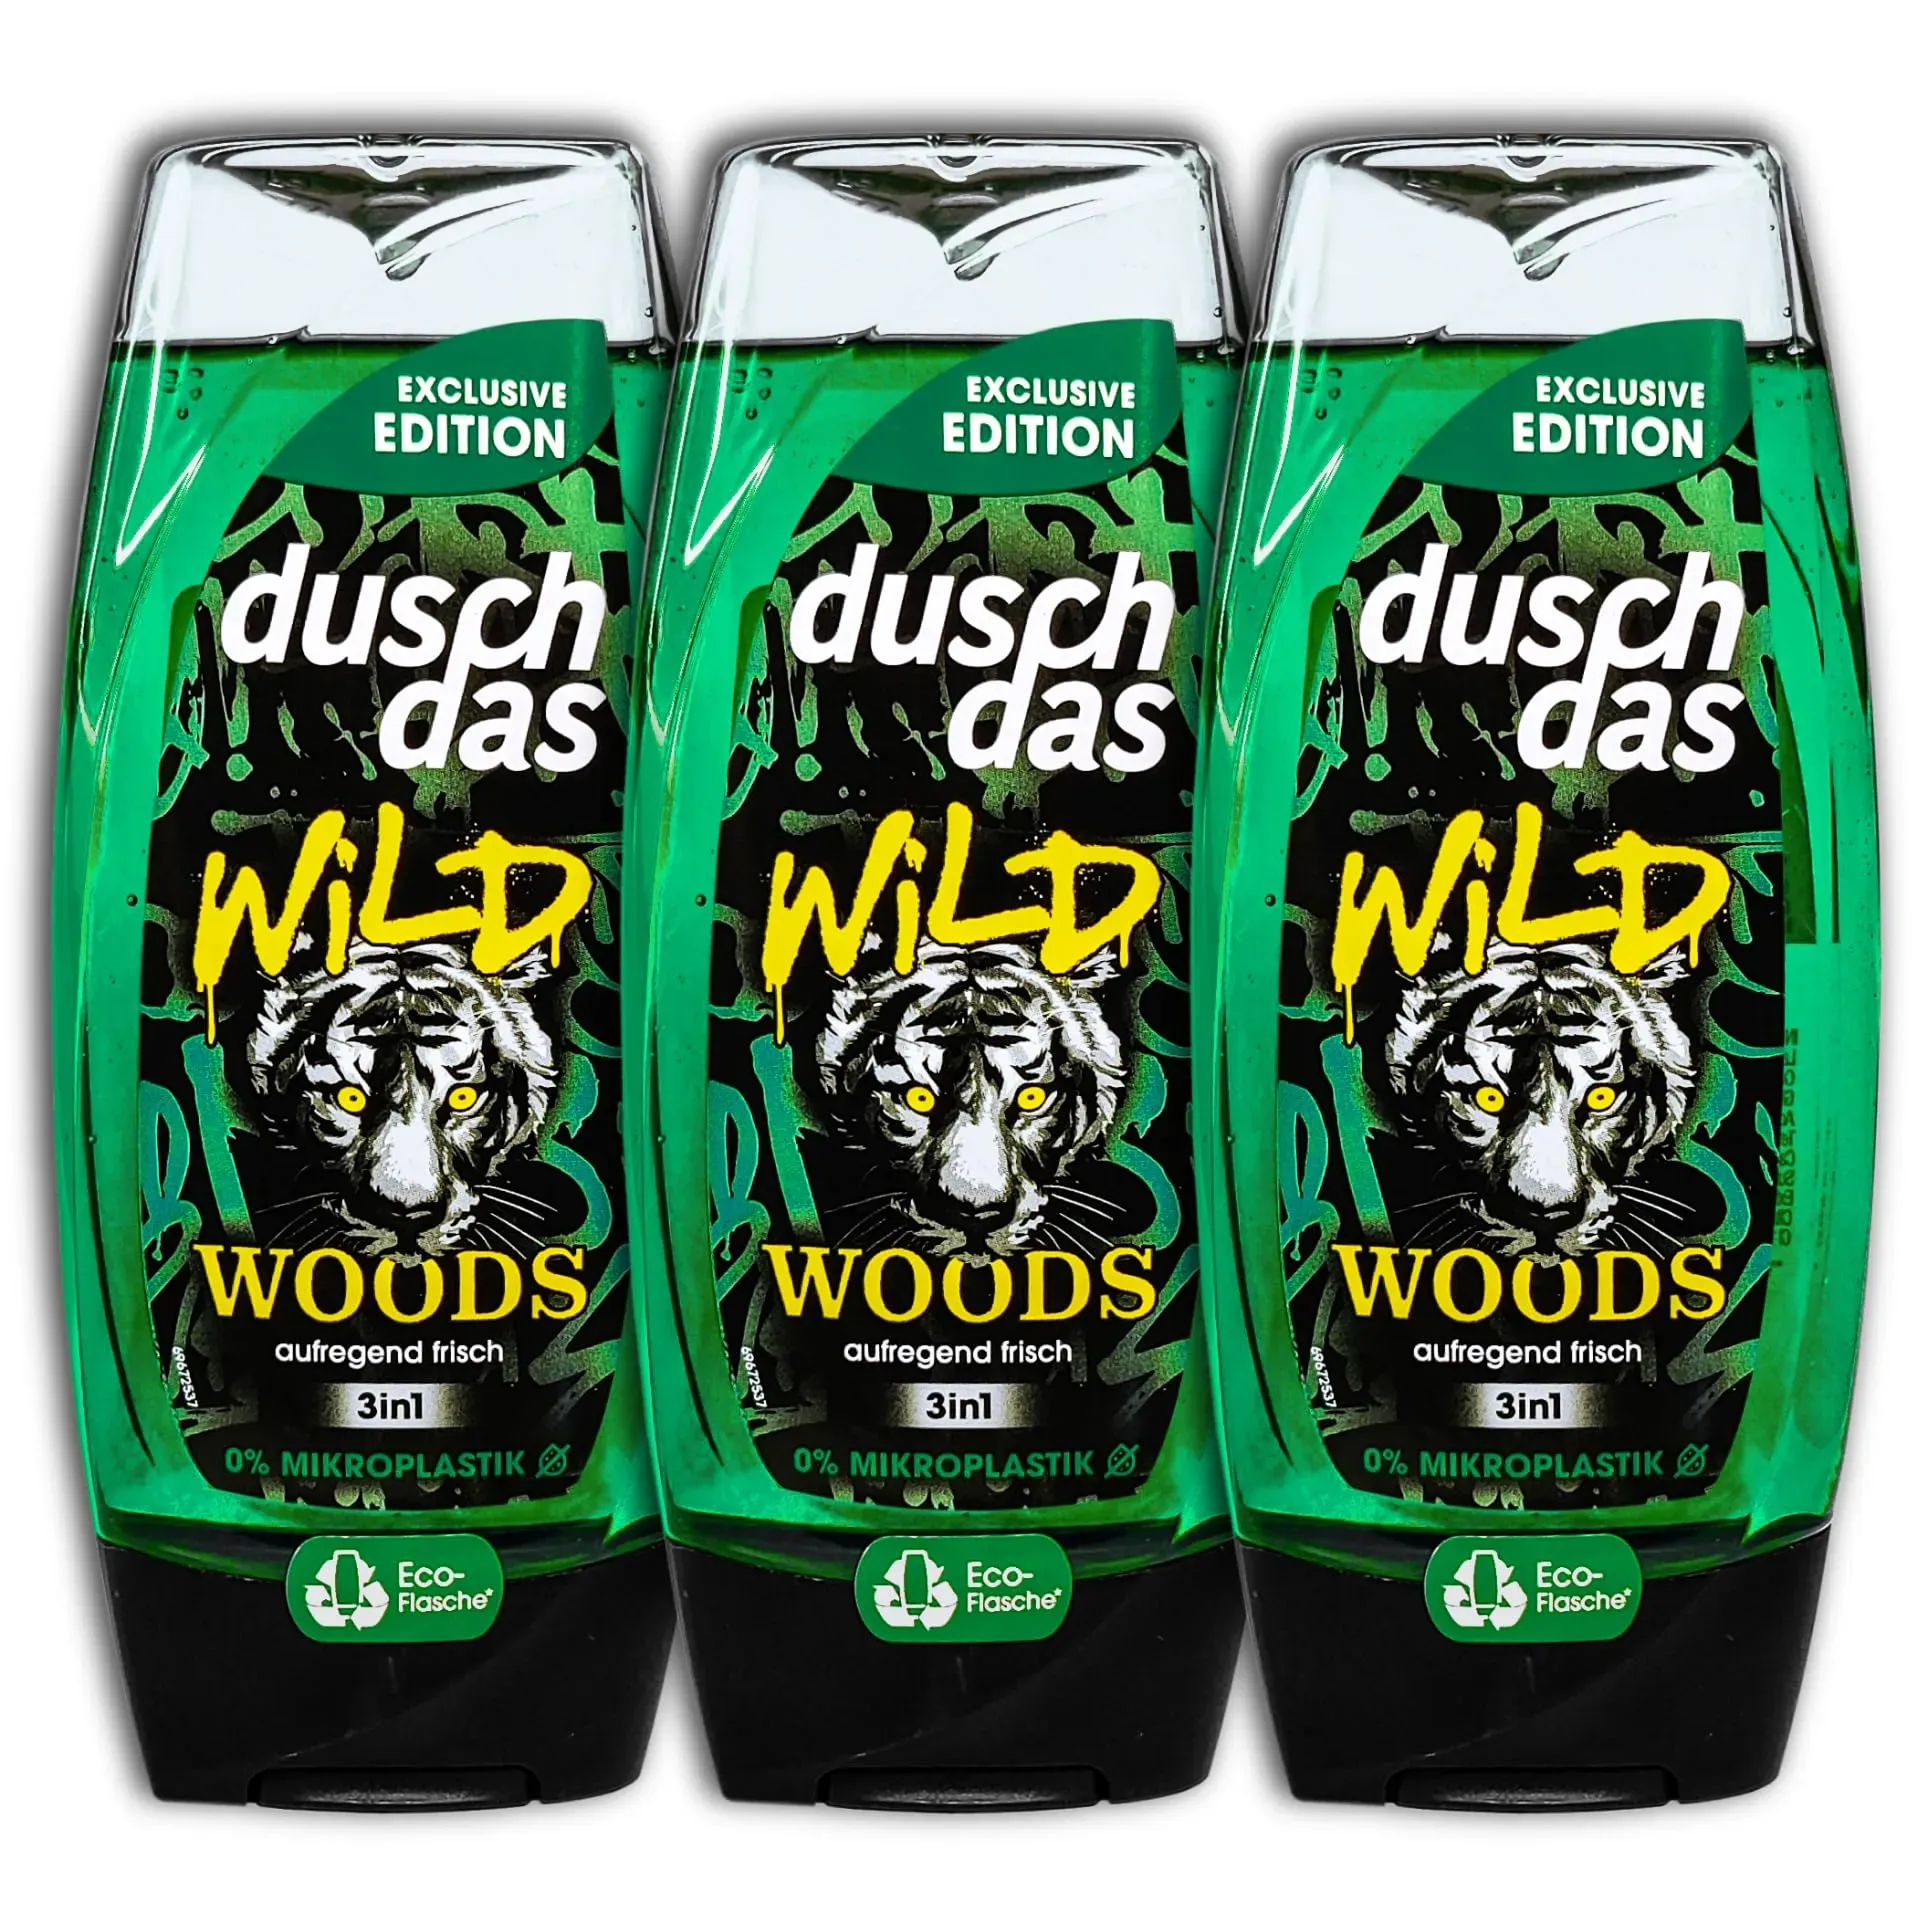 TopDeal 3er Pack Duschdas Duschgel Wild Woods 3in1 Shower Gel 3 x 225 ml